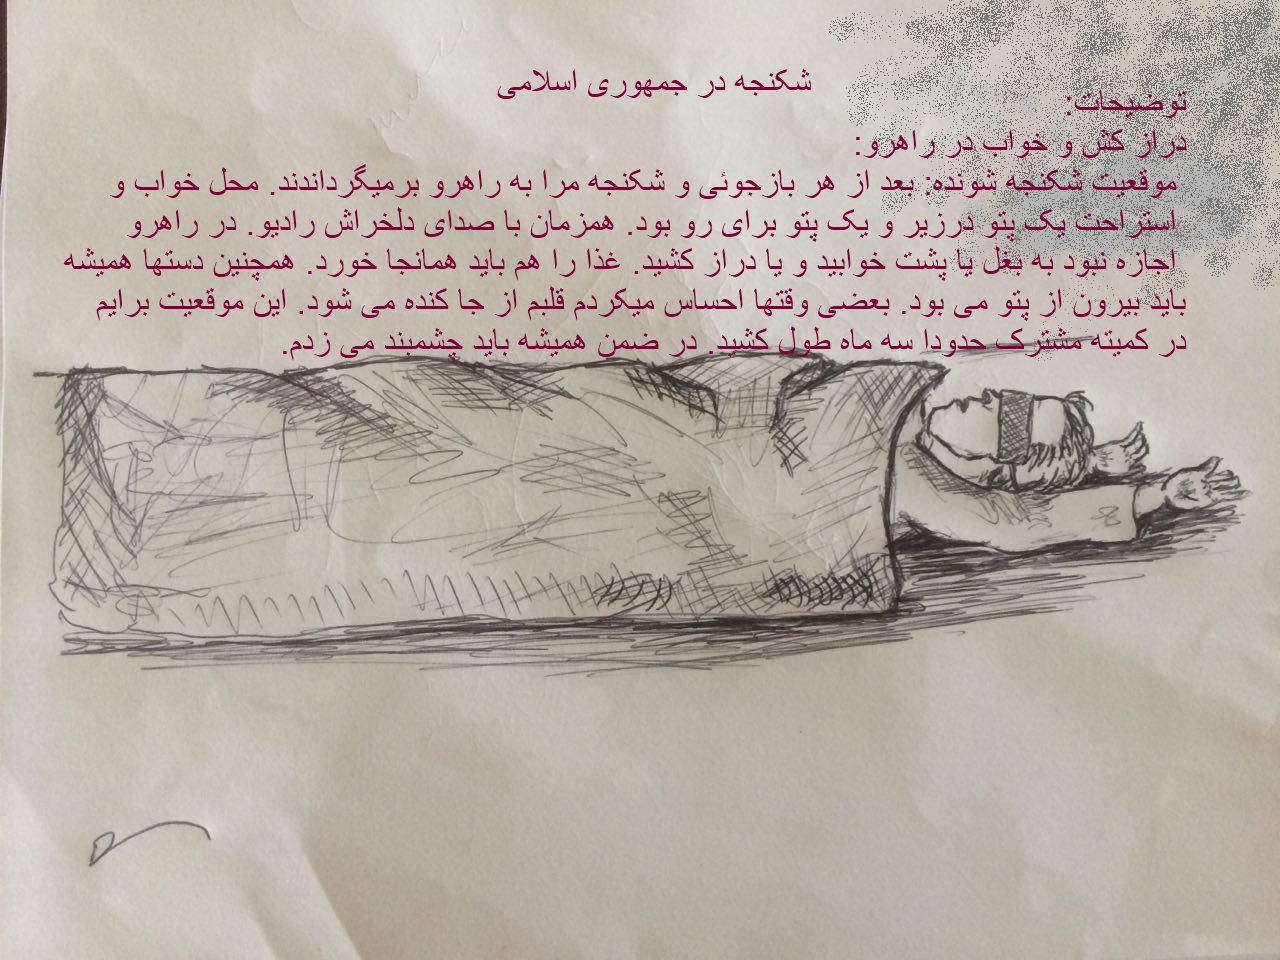 شکنجه و اعدام در جمهوری اسلامی ایران